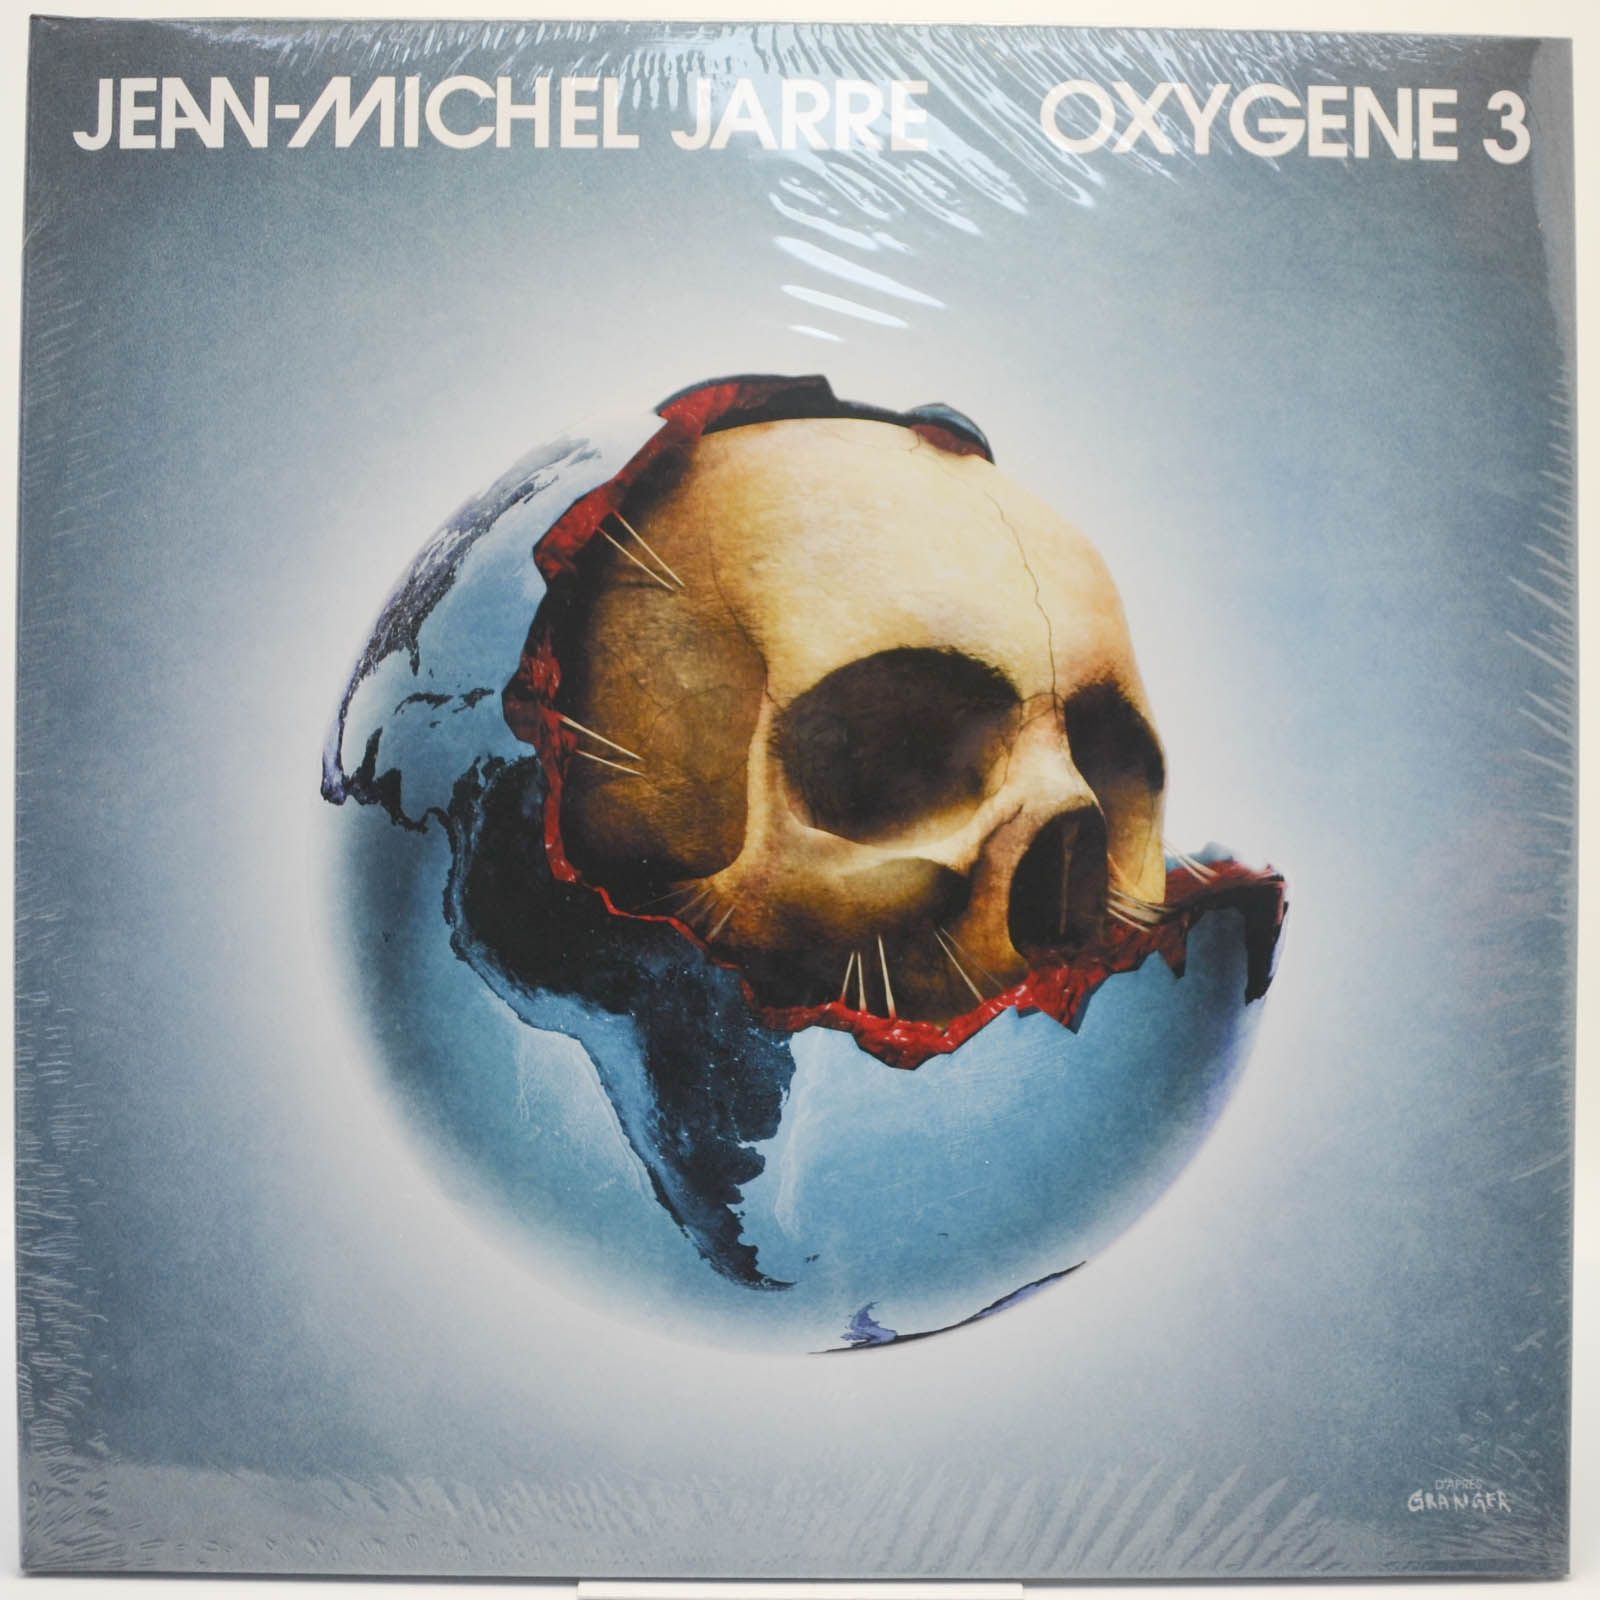 Jean-Michel Jarre — Oxygene 3, 2016